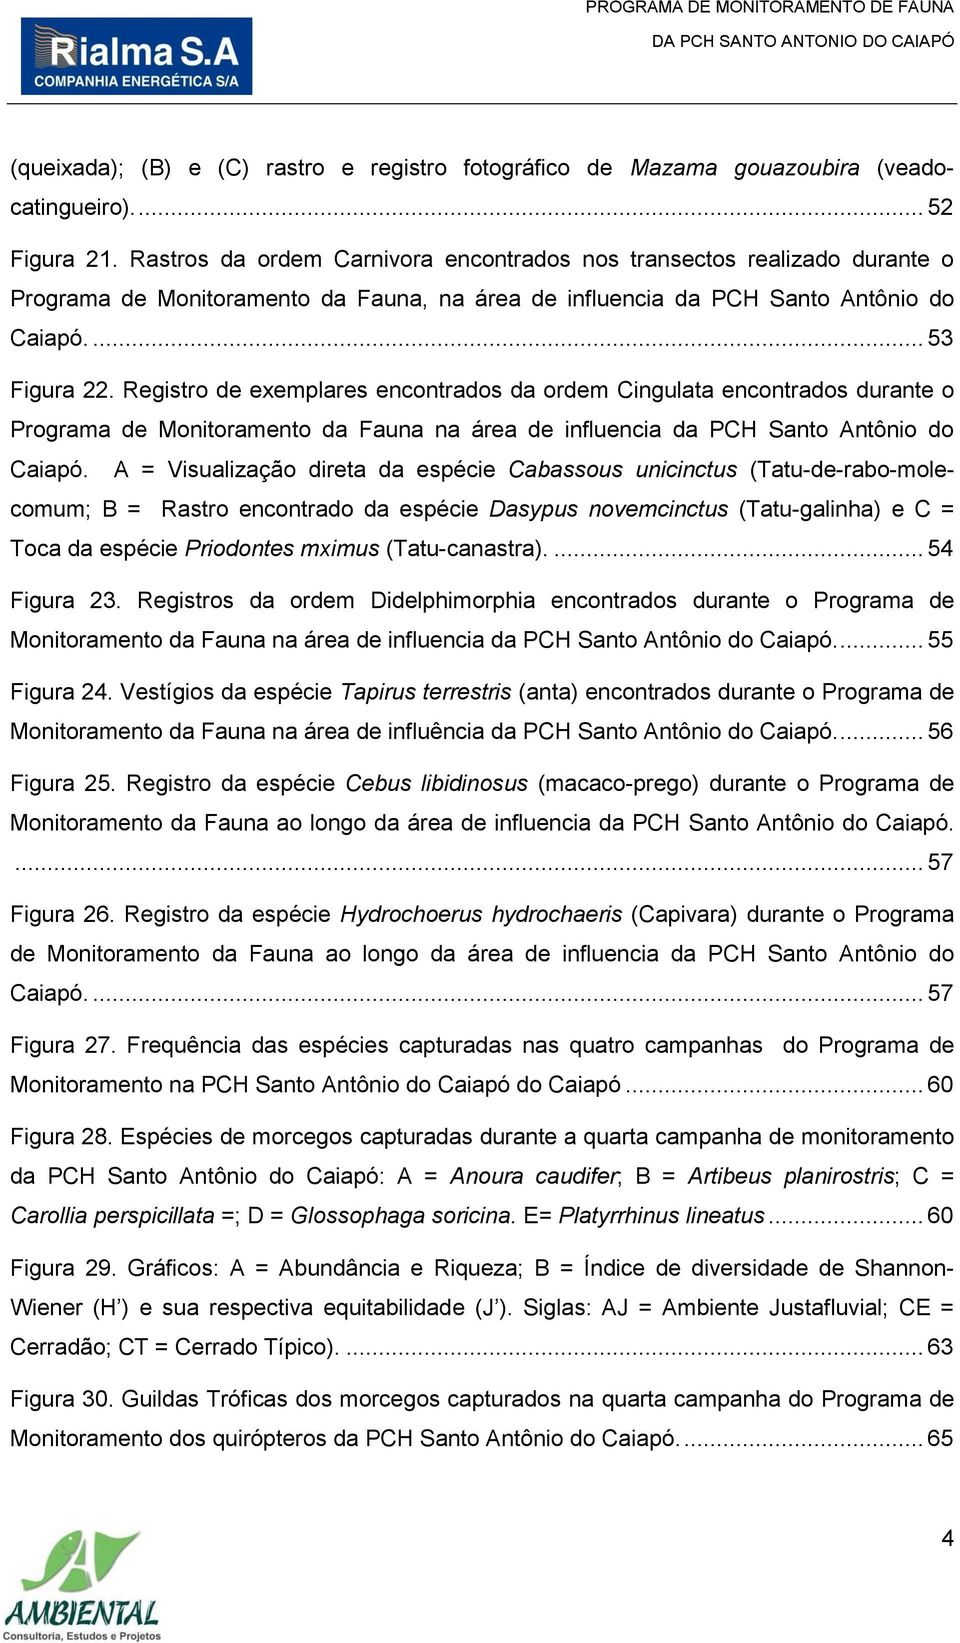 Registro de exemplares encontrados da ordem Cingulata encontrados durante o Programa de Monitoramento da Fauna na área de influencia da PCH Santo Antônio do Caiapó.